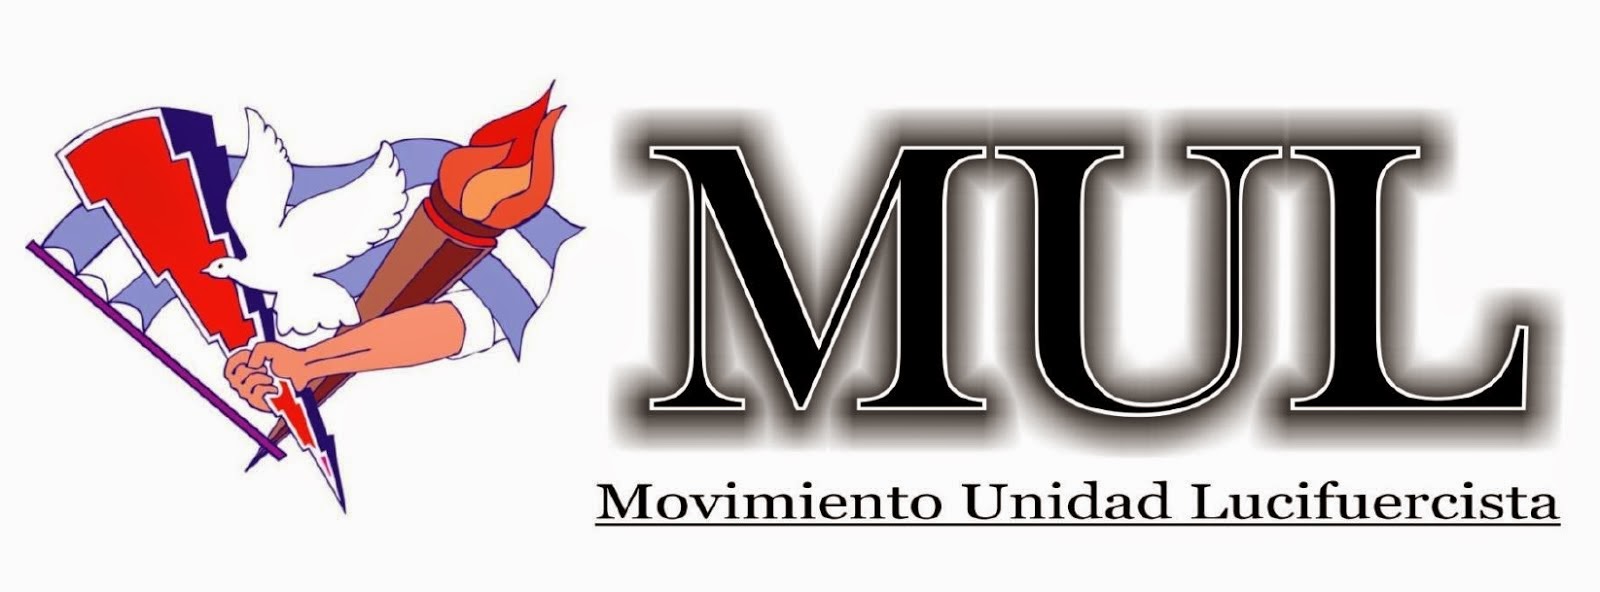 Movimiento de Unidad Lucifuercista MUL